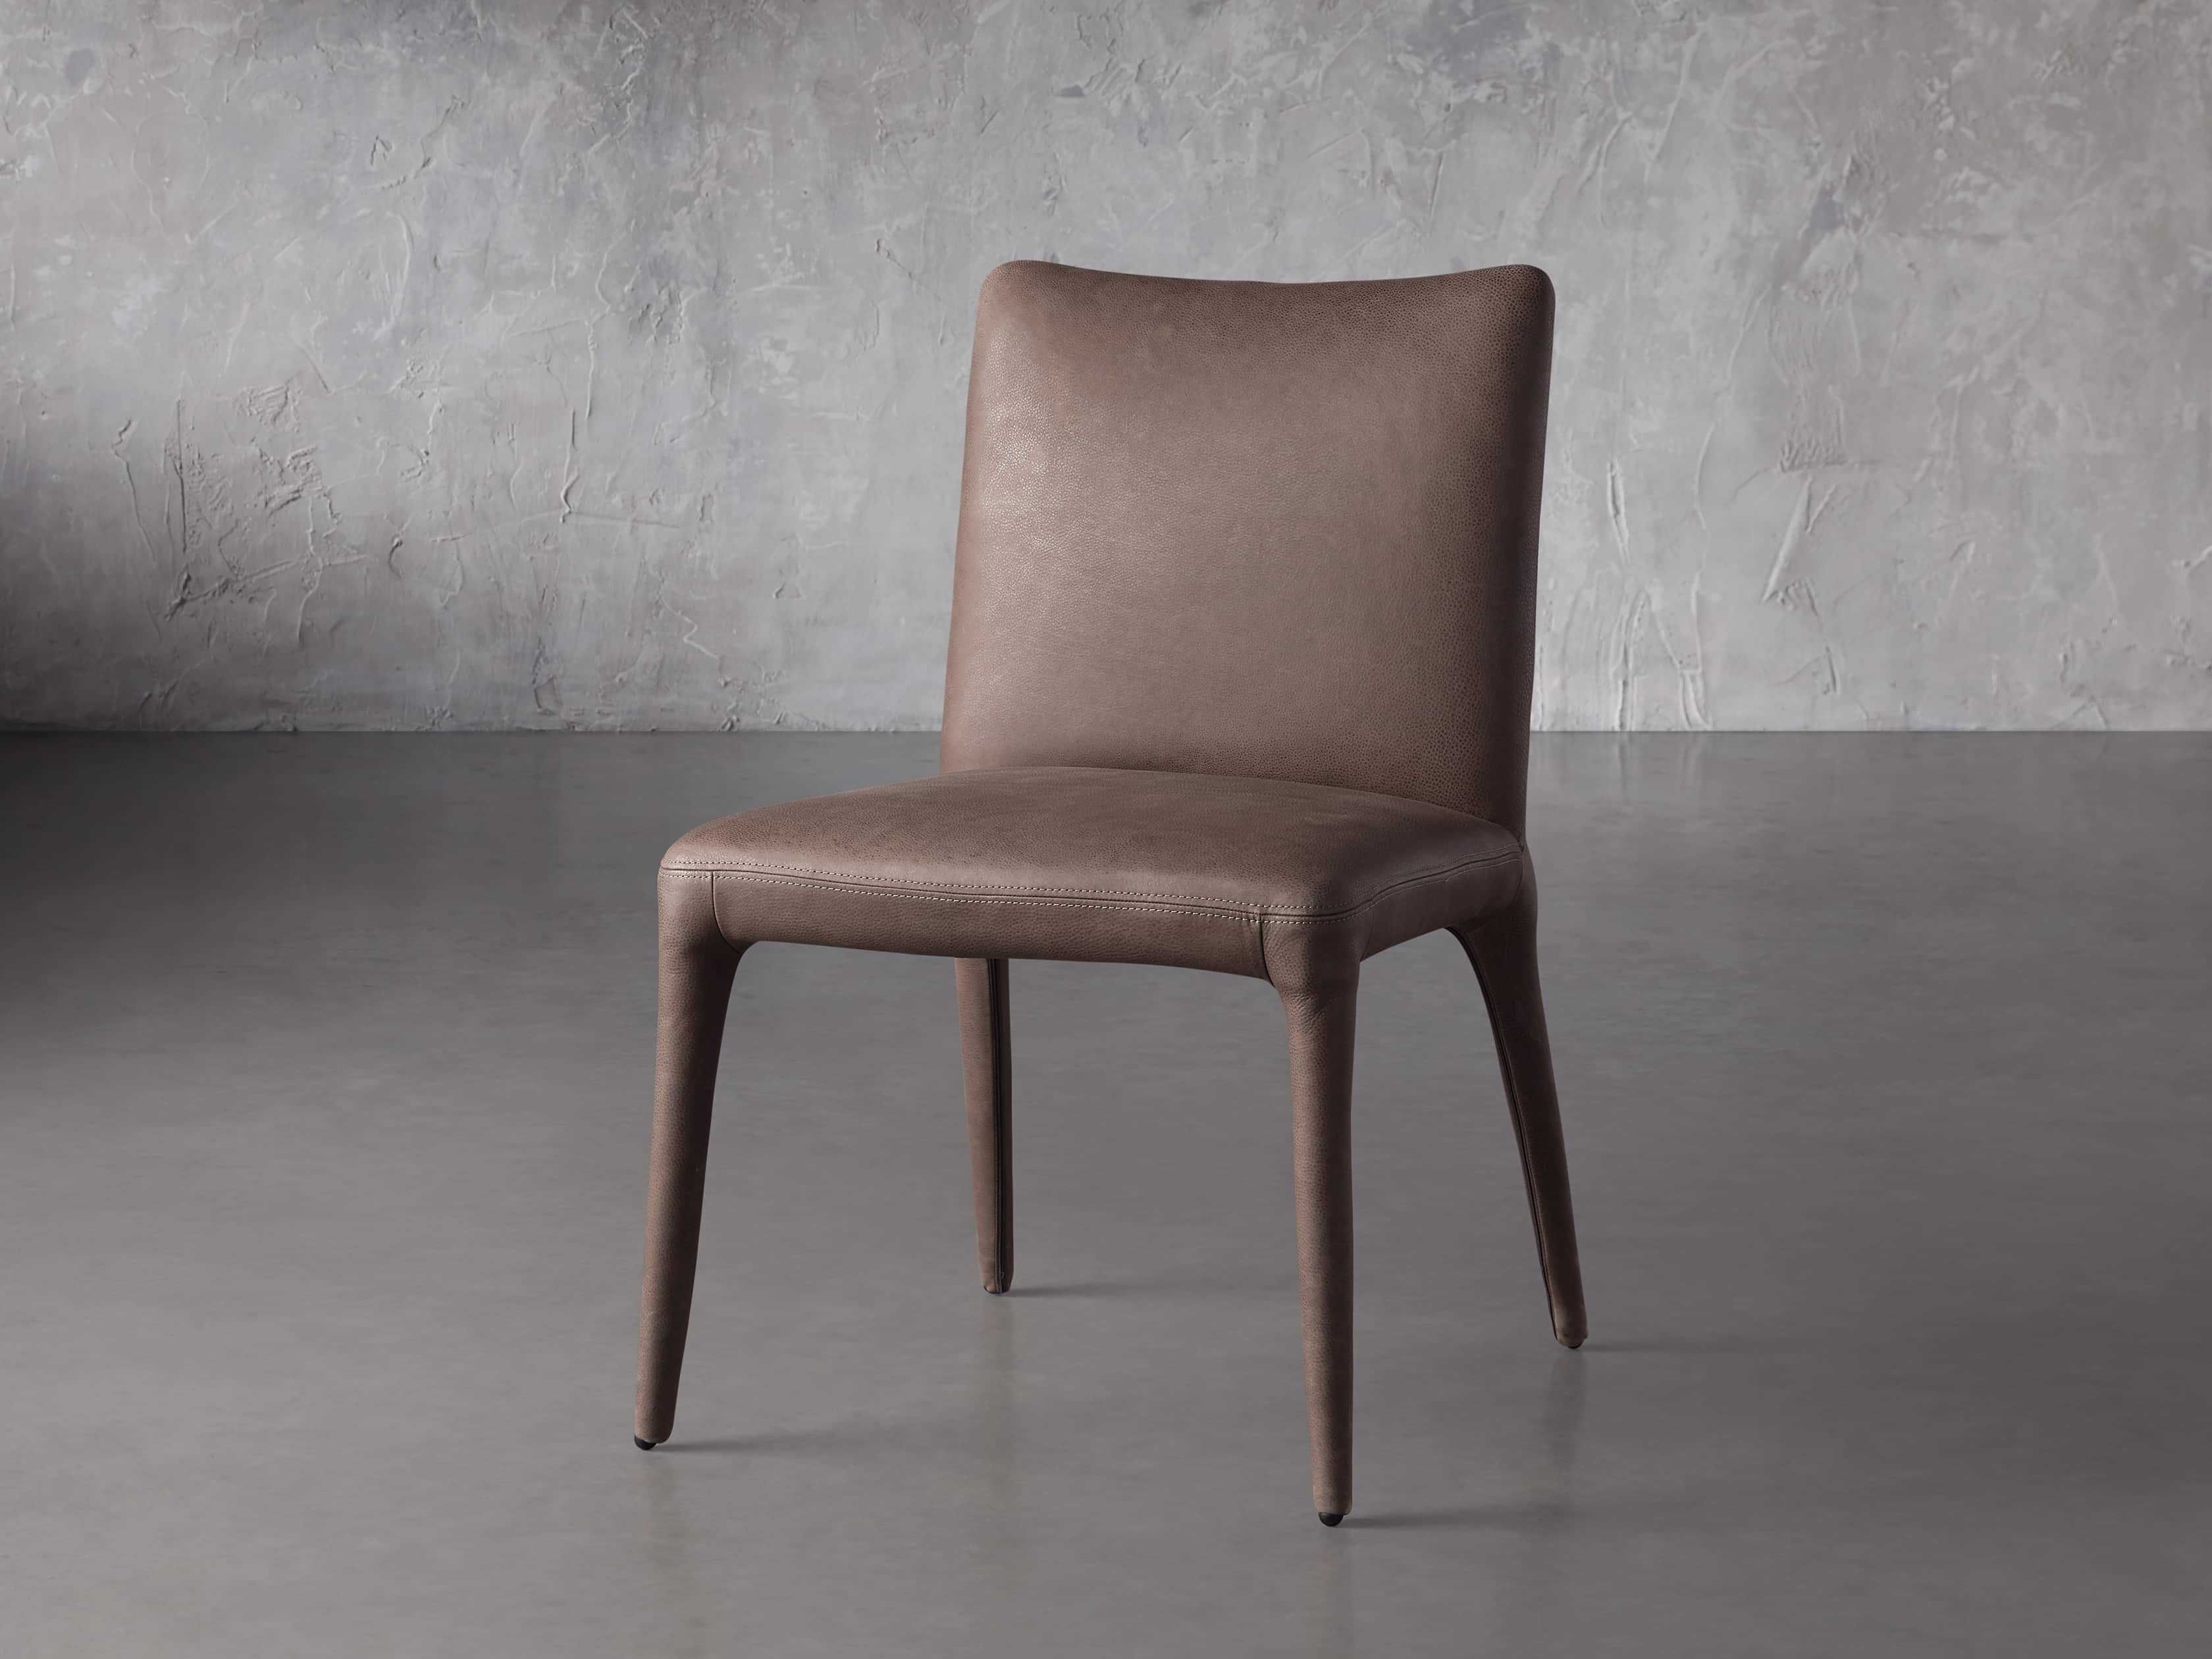 Pelle Dining Side Chair in Lanie Chocolate | Arhaus